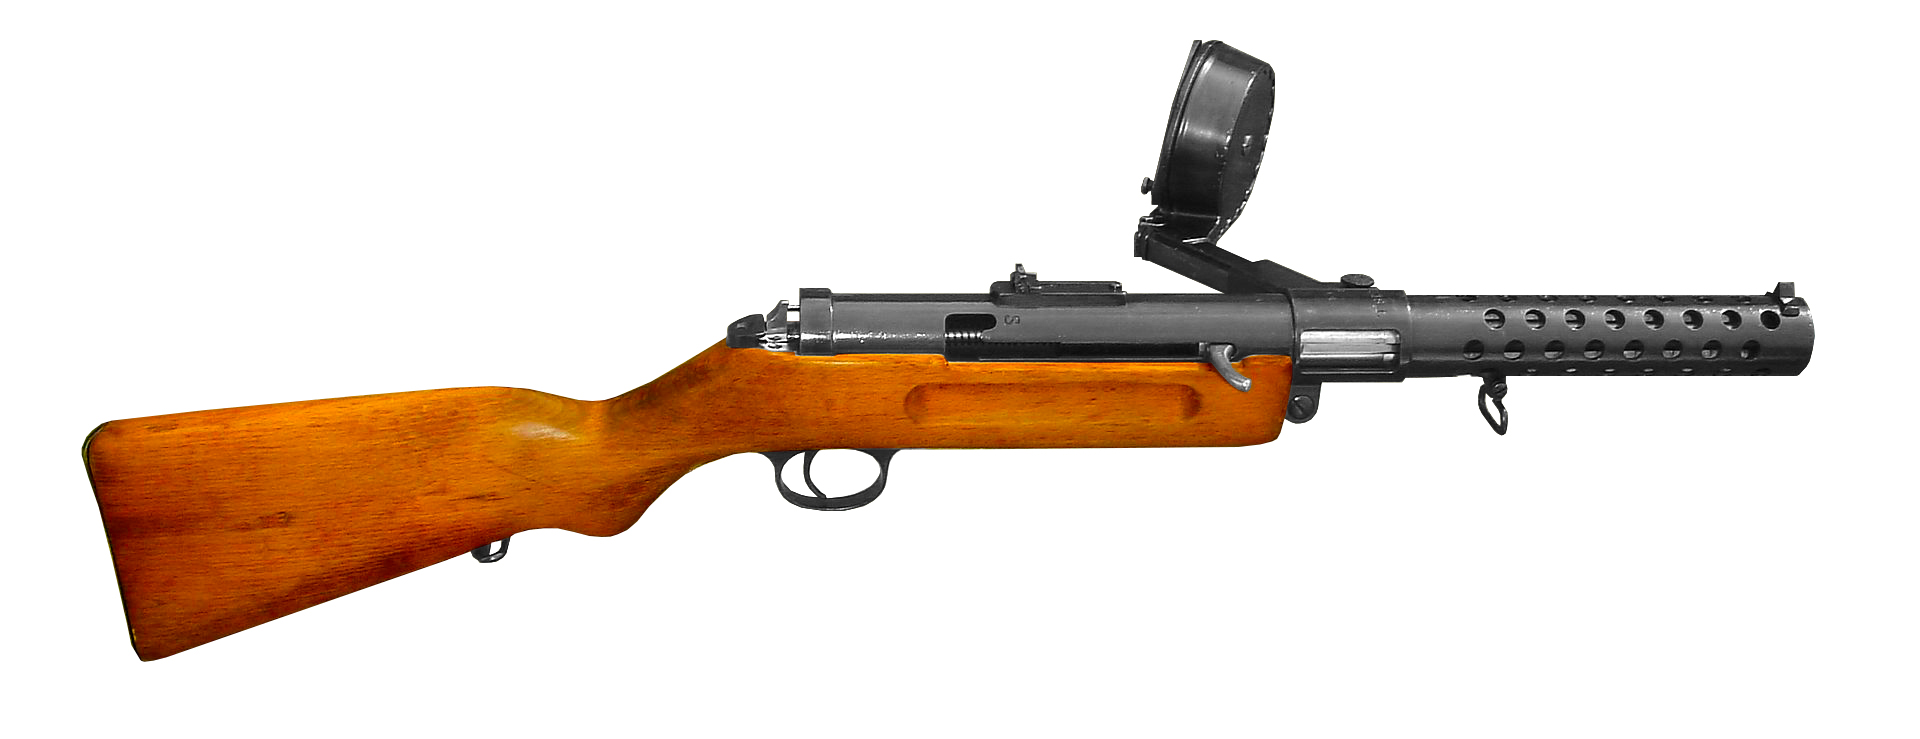 베르그만 MP 18 기관단총